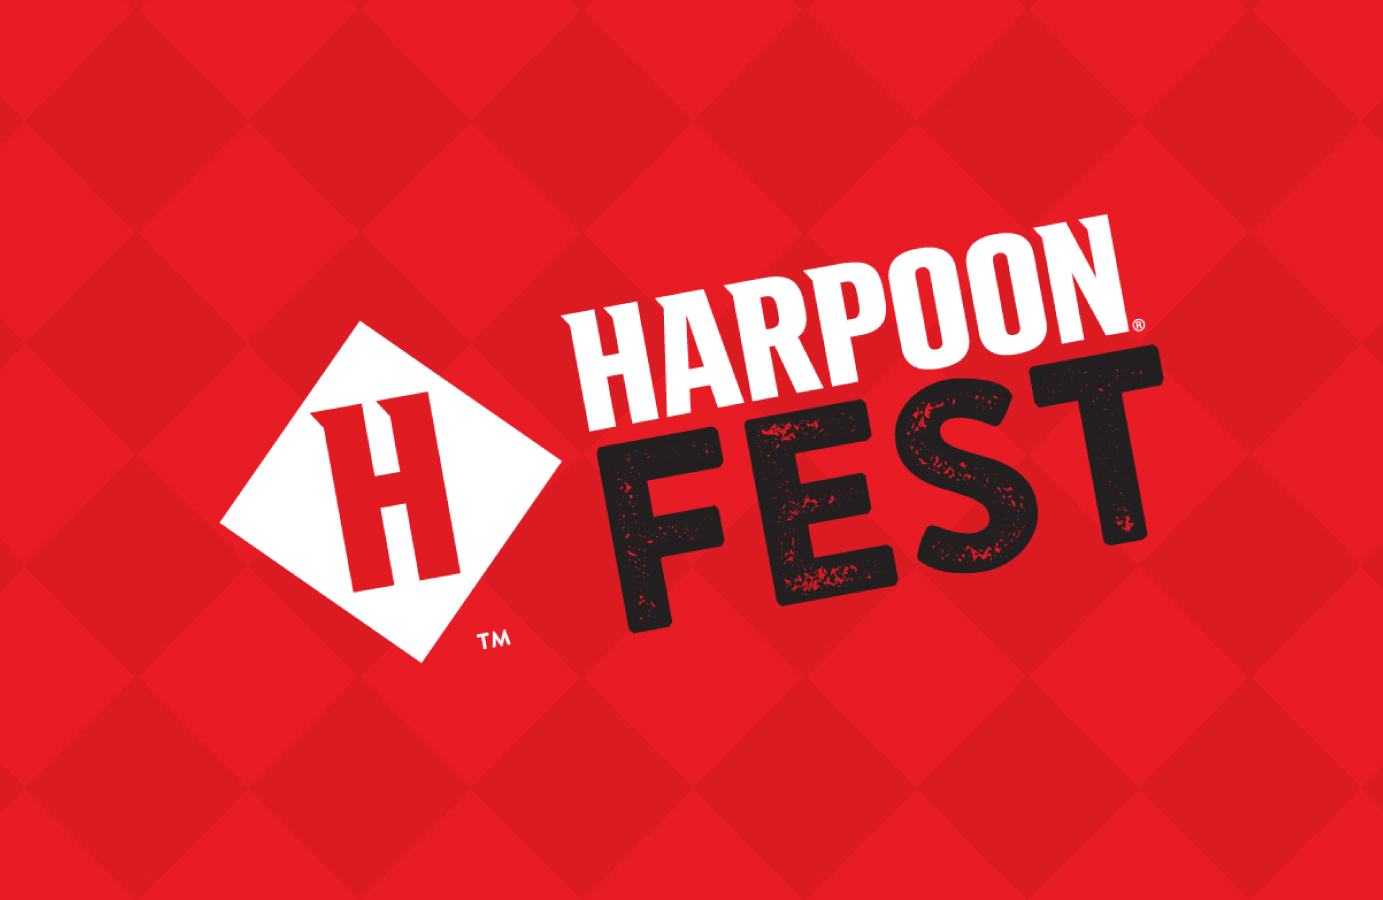 harpoon fest fall 2012